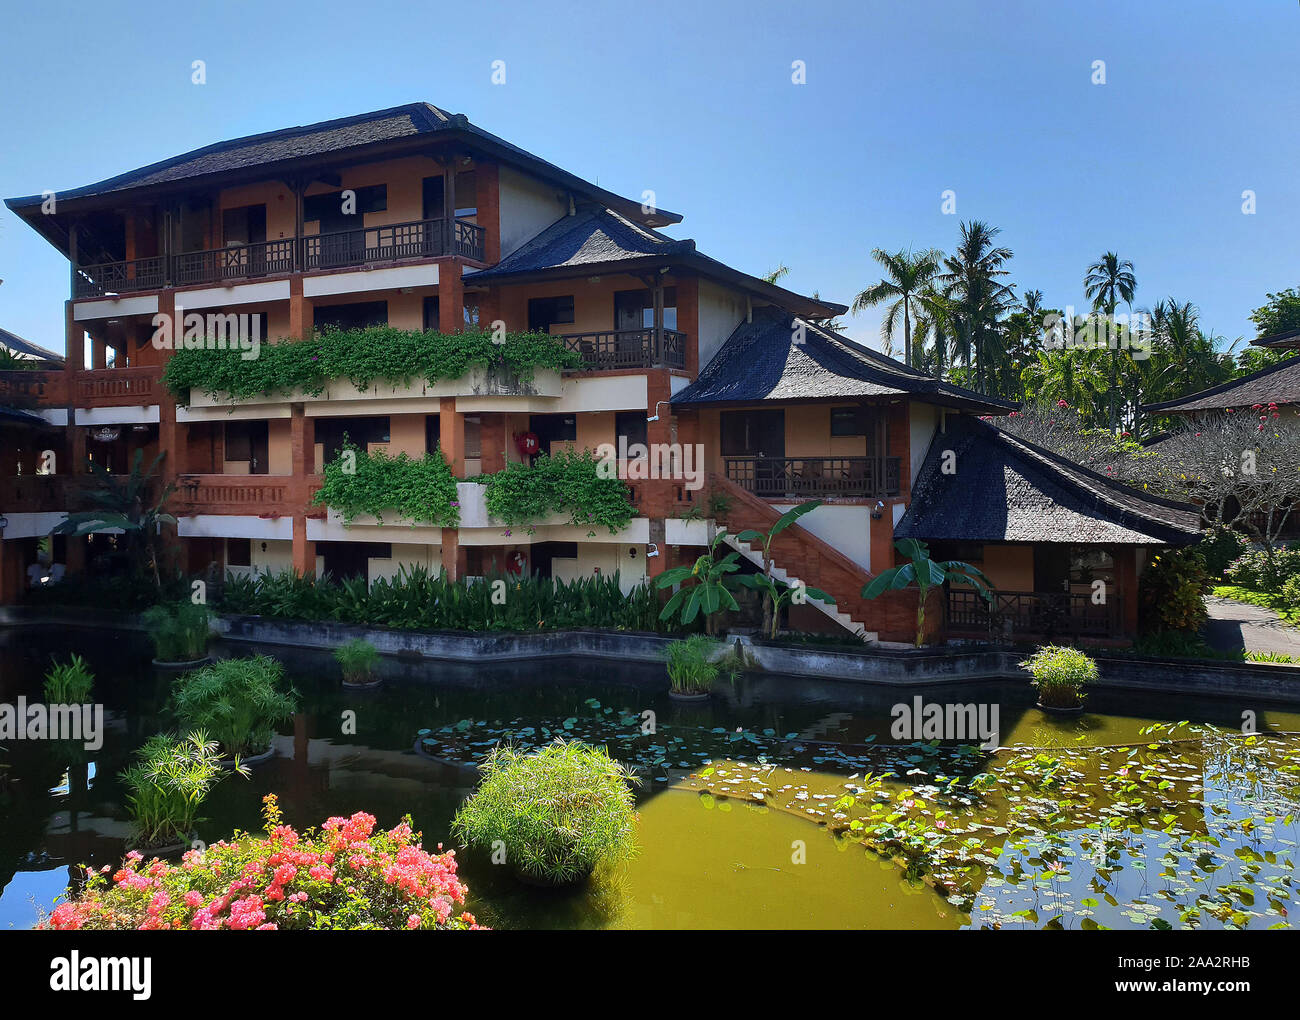 Vista de la playa del Club Med Resort habitaciones, Bali, Indonesia Foto de stock